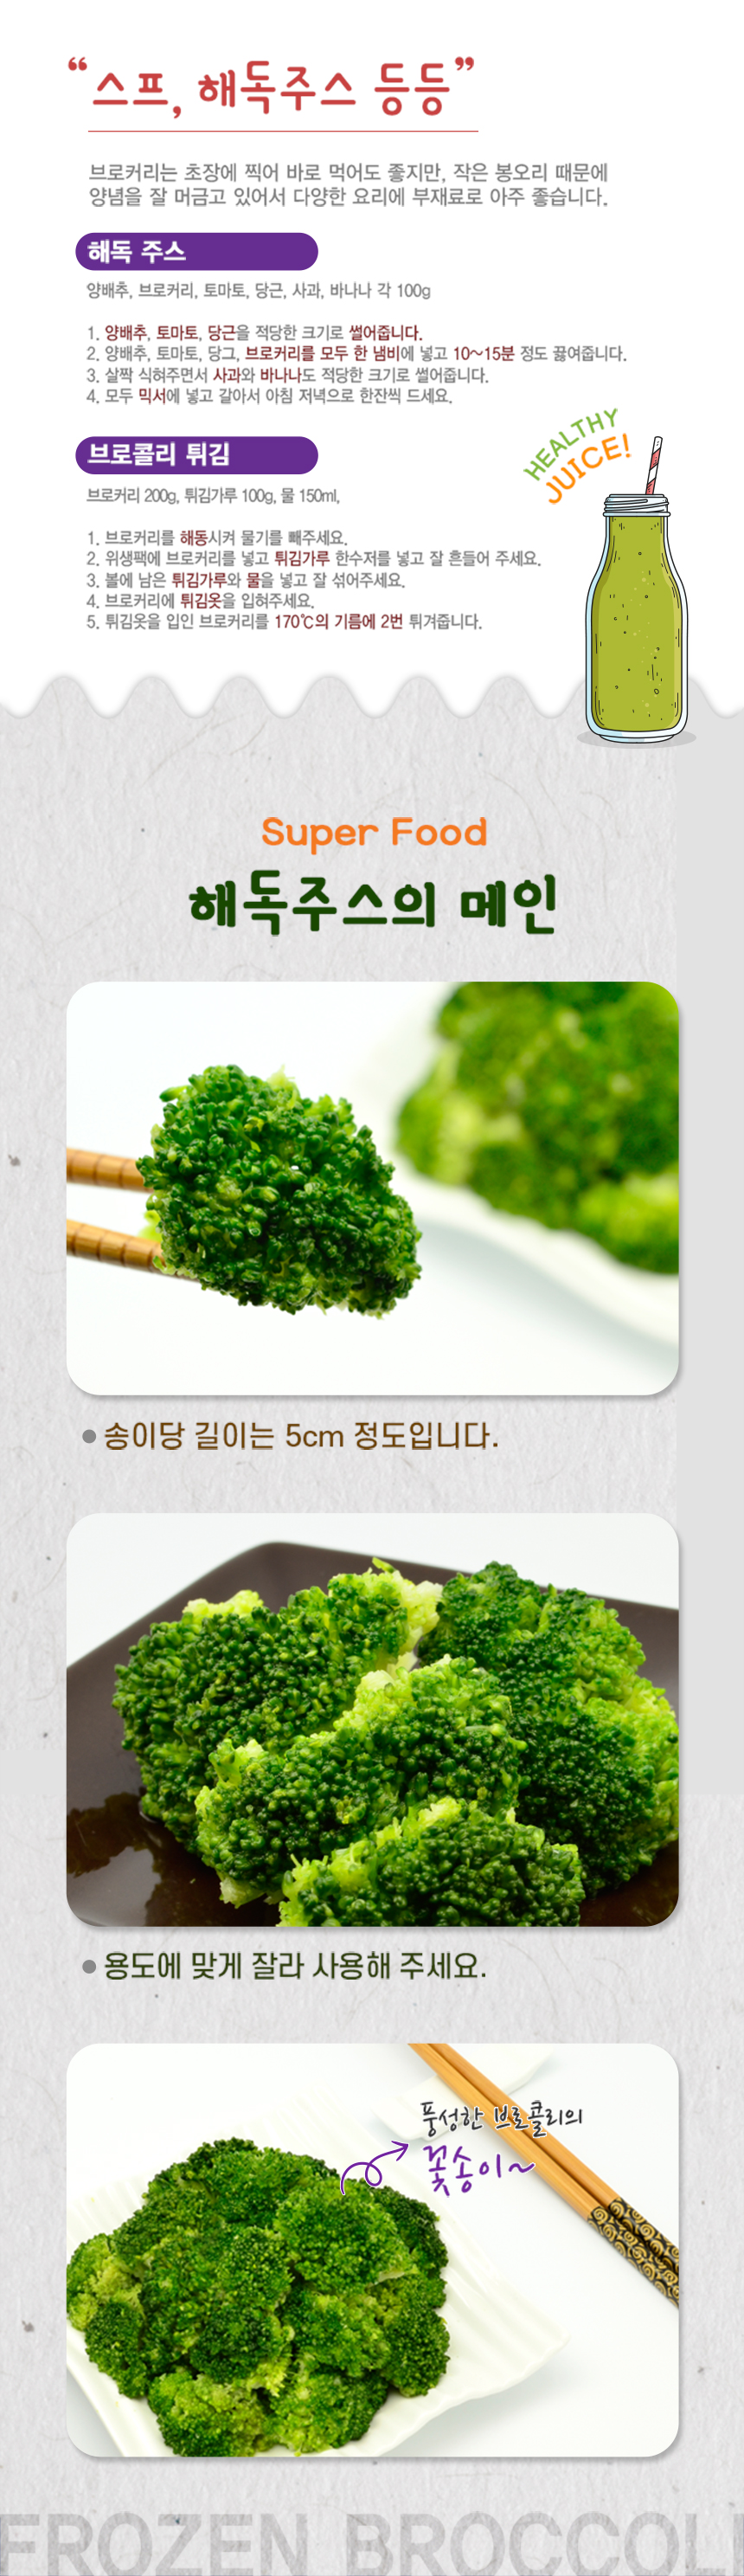 broccoli03.jpg